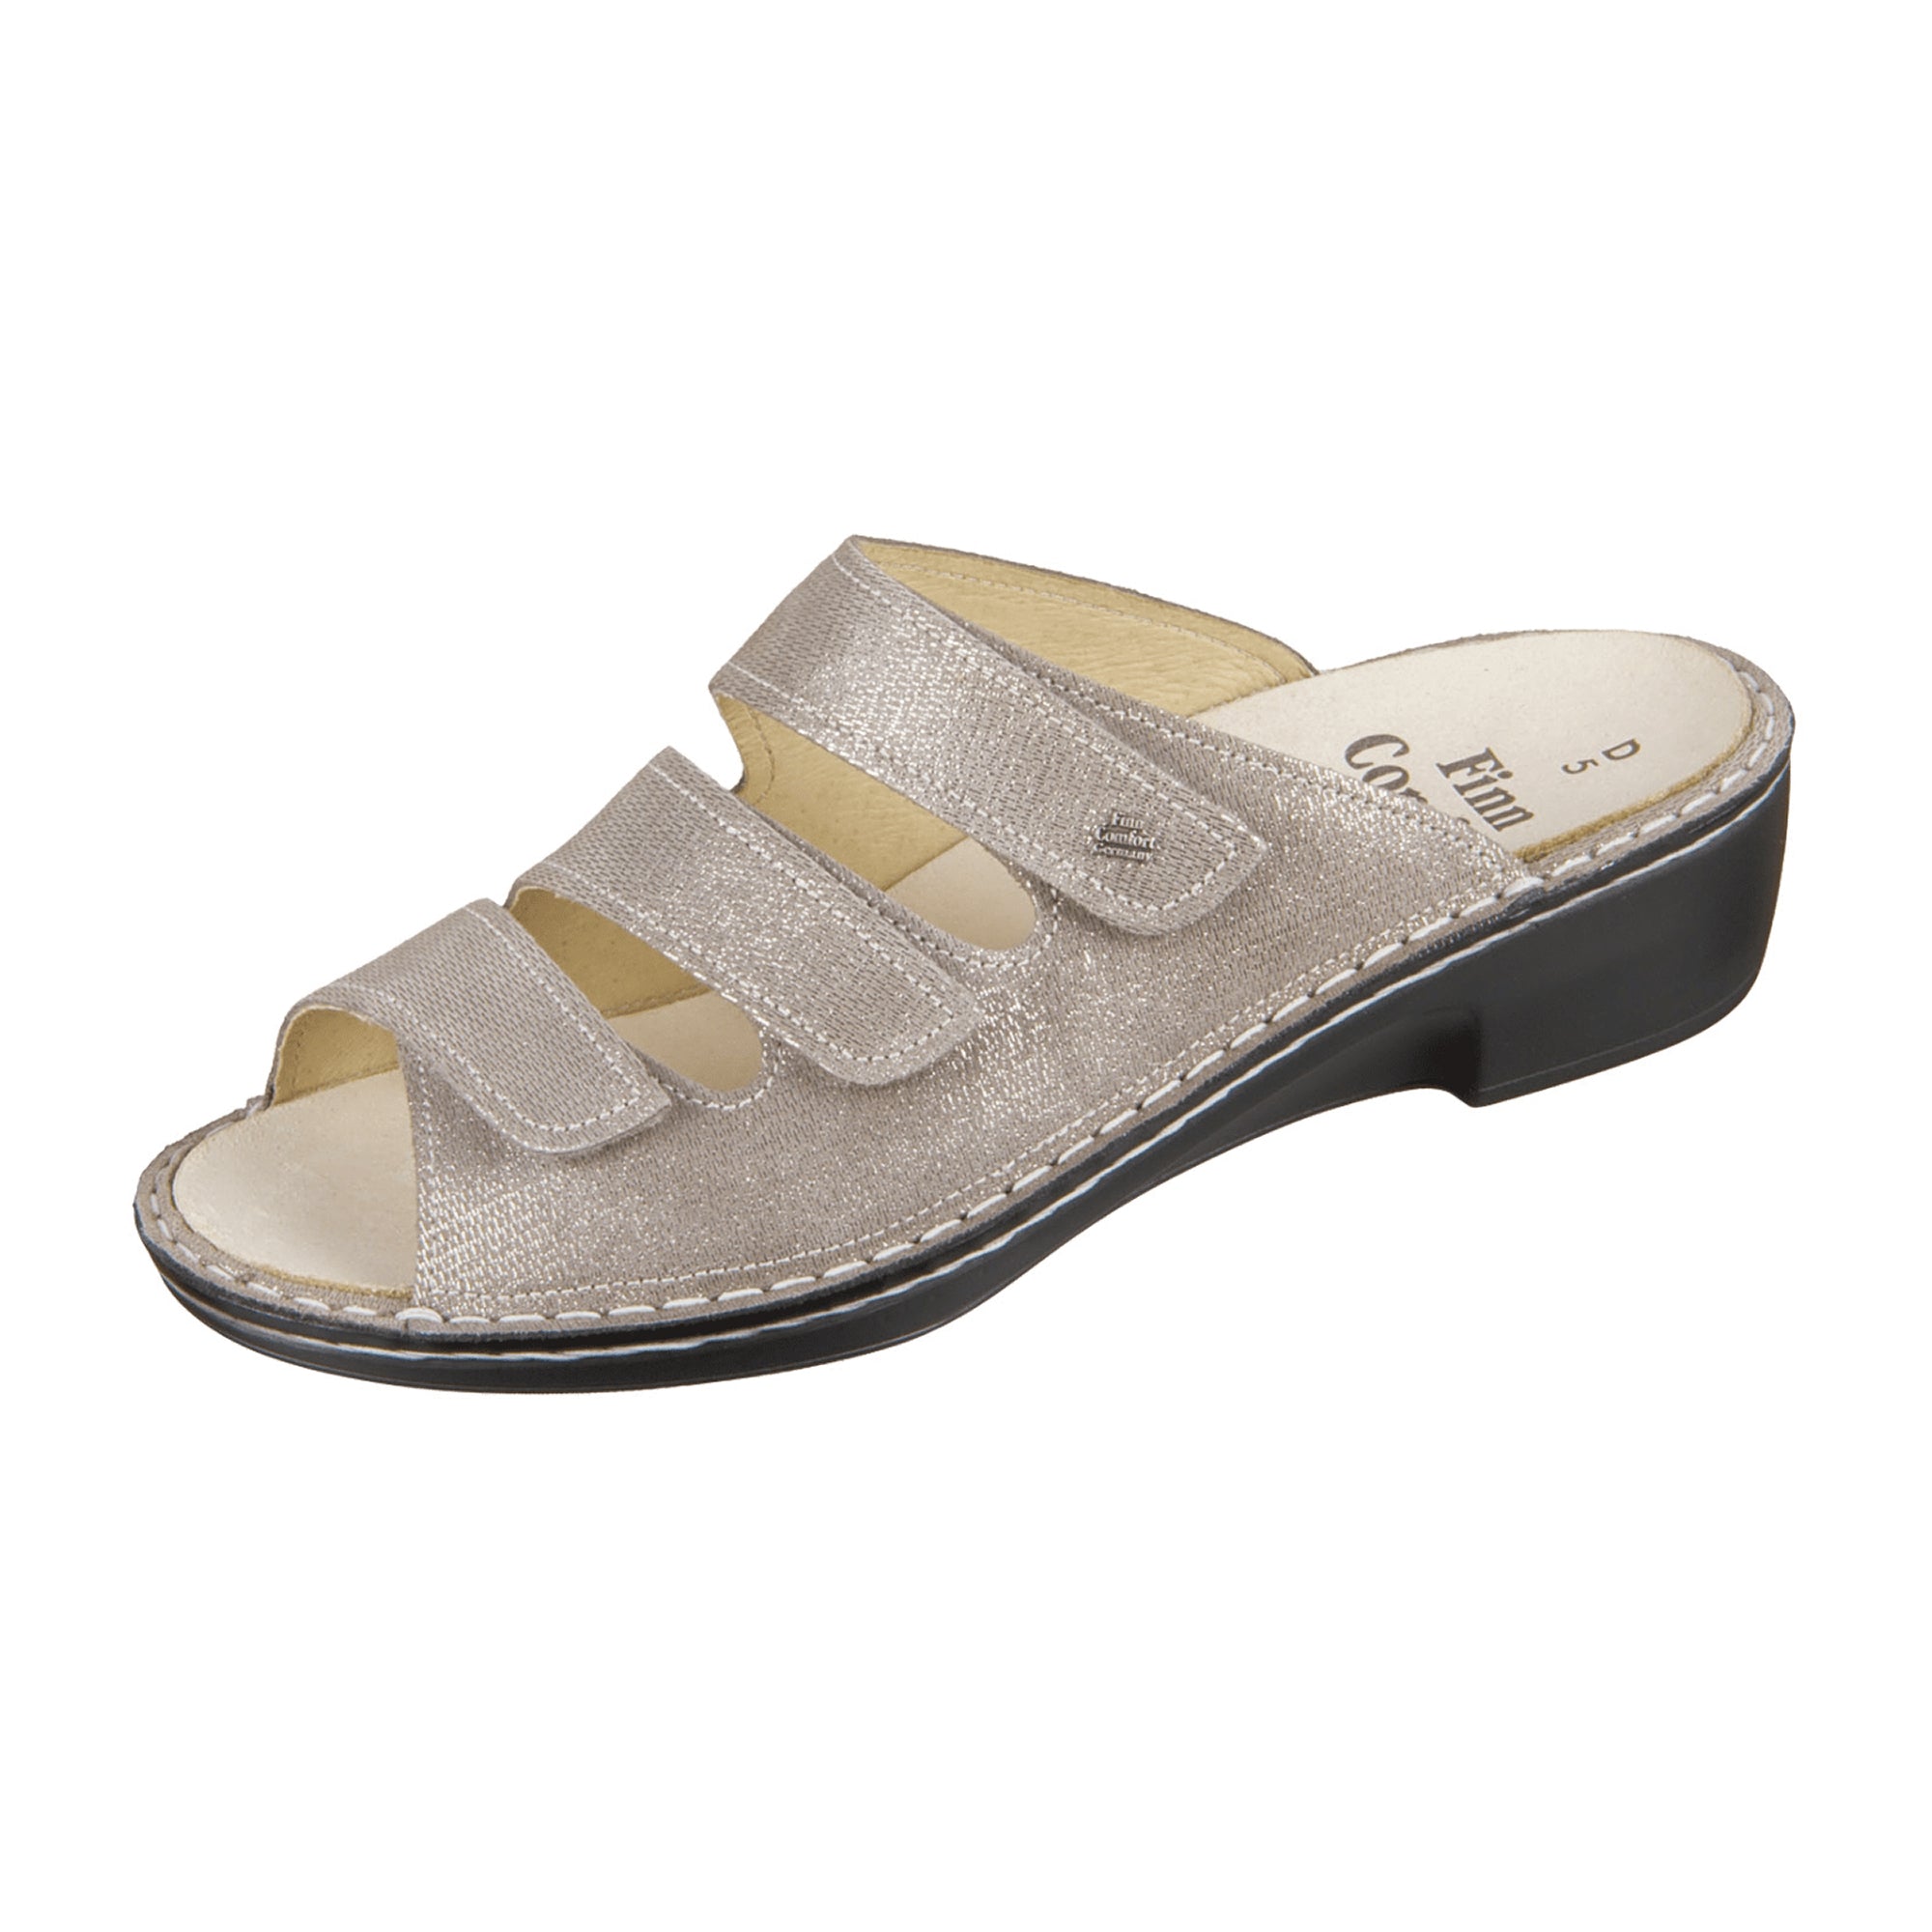 Finn Comfort Canzo Beige Comfort Sandals for Women